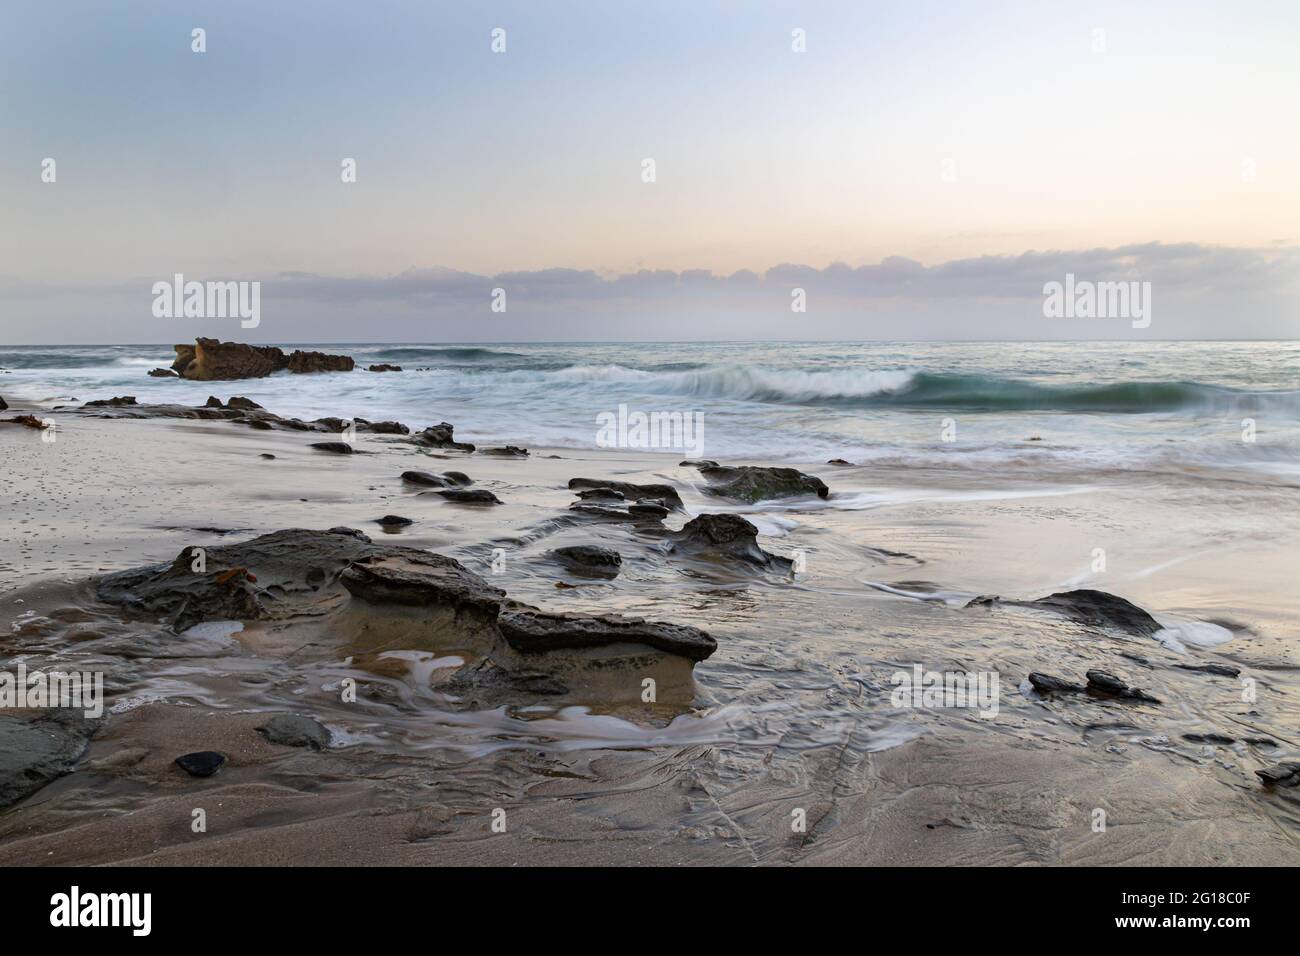 Verwitterte Felsen im Sand in Laguna Beach, Kalifornien. Wellen und mehr Felsen vor der Küste. Am frühen Morgen Himmel mit Wolken in der Ferne. Stockfoto